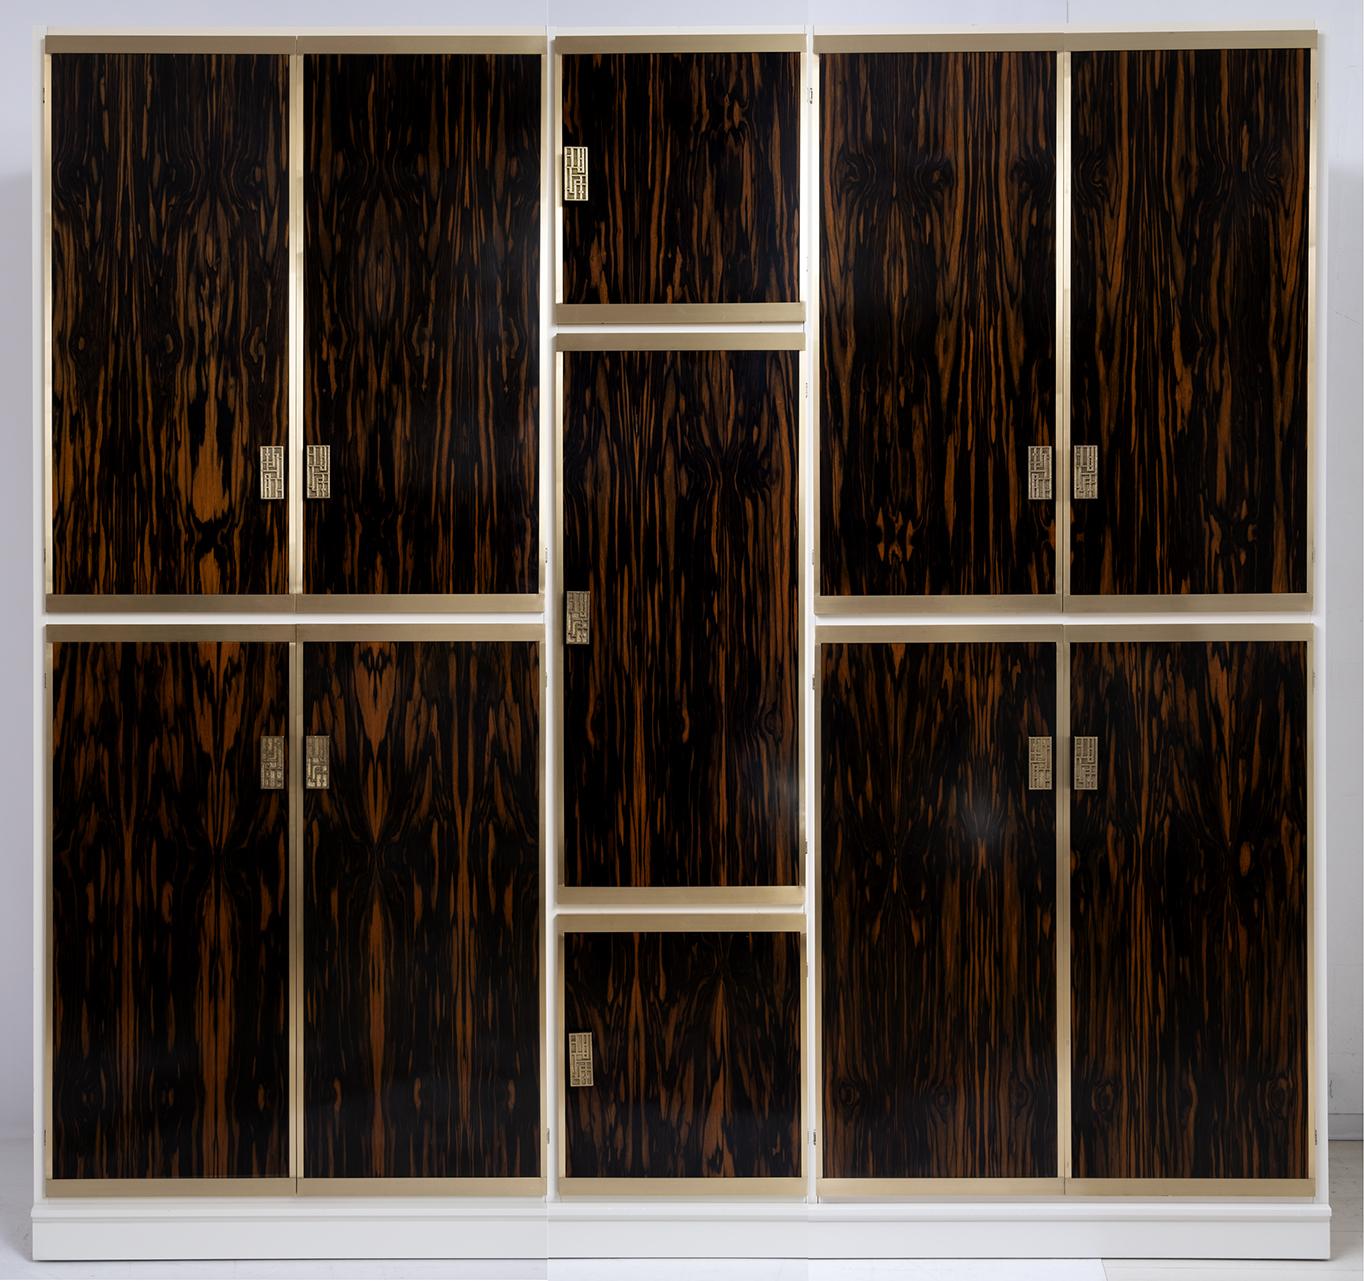 Von Luciano Frigerio entworfener Schrank mit elf Türen aus Messing und Makassar-Holz. Makassar-Ebenholz ist eine wertvolle Essenz, die in der Kunsttischlerei, der Feinschreinerei, der Drechslerei und bei der Herstellung von Musikinstrumenten weit